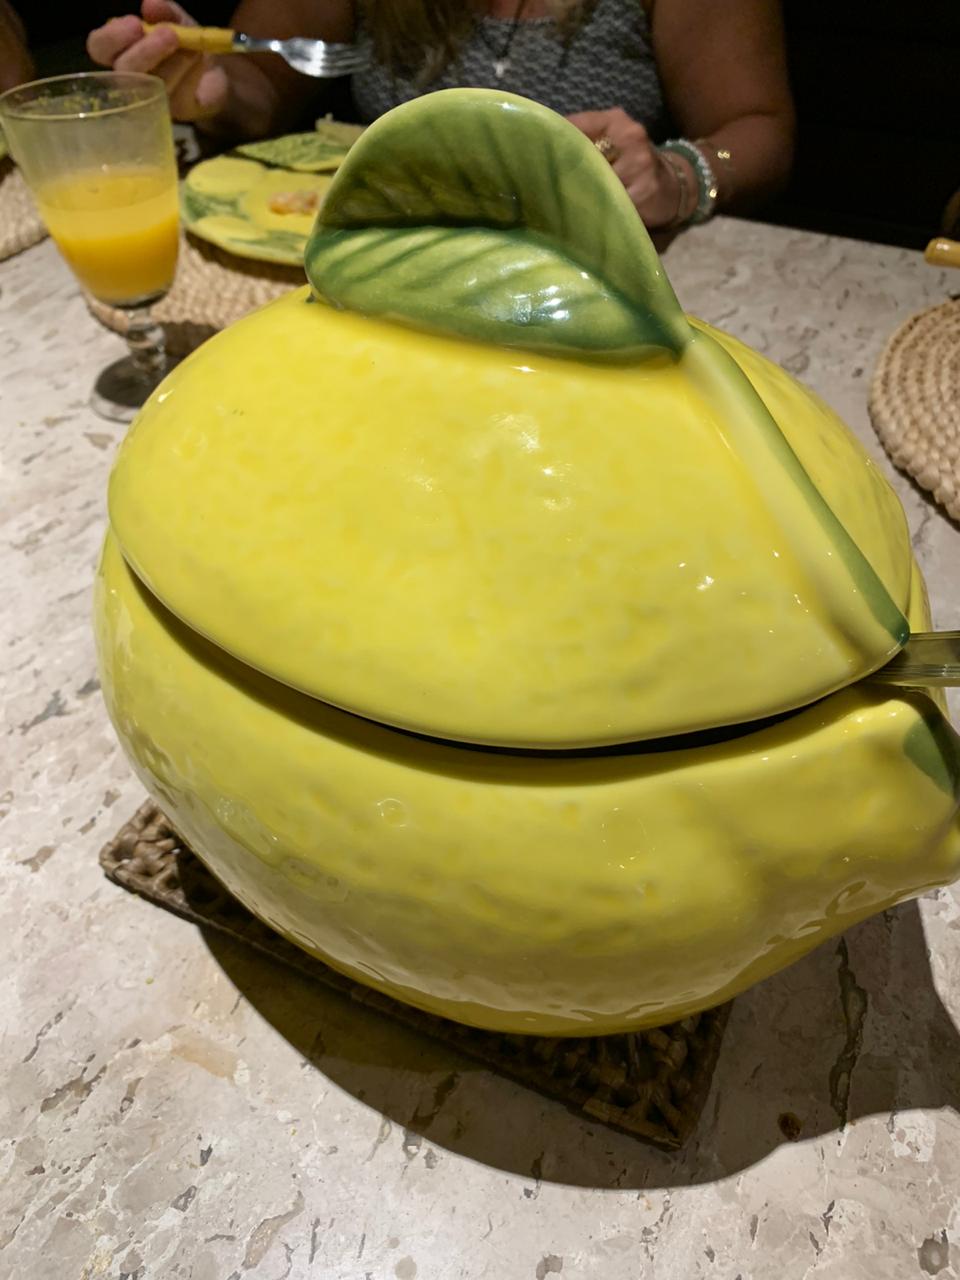 O risone servido em linda travessa de limão siciliano